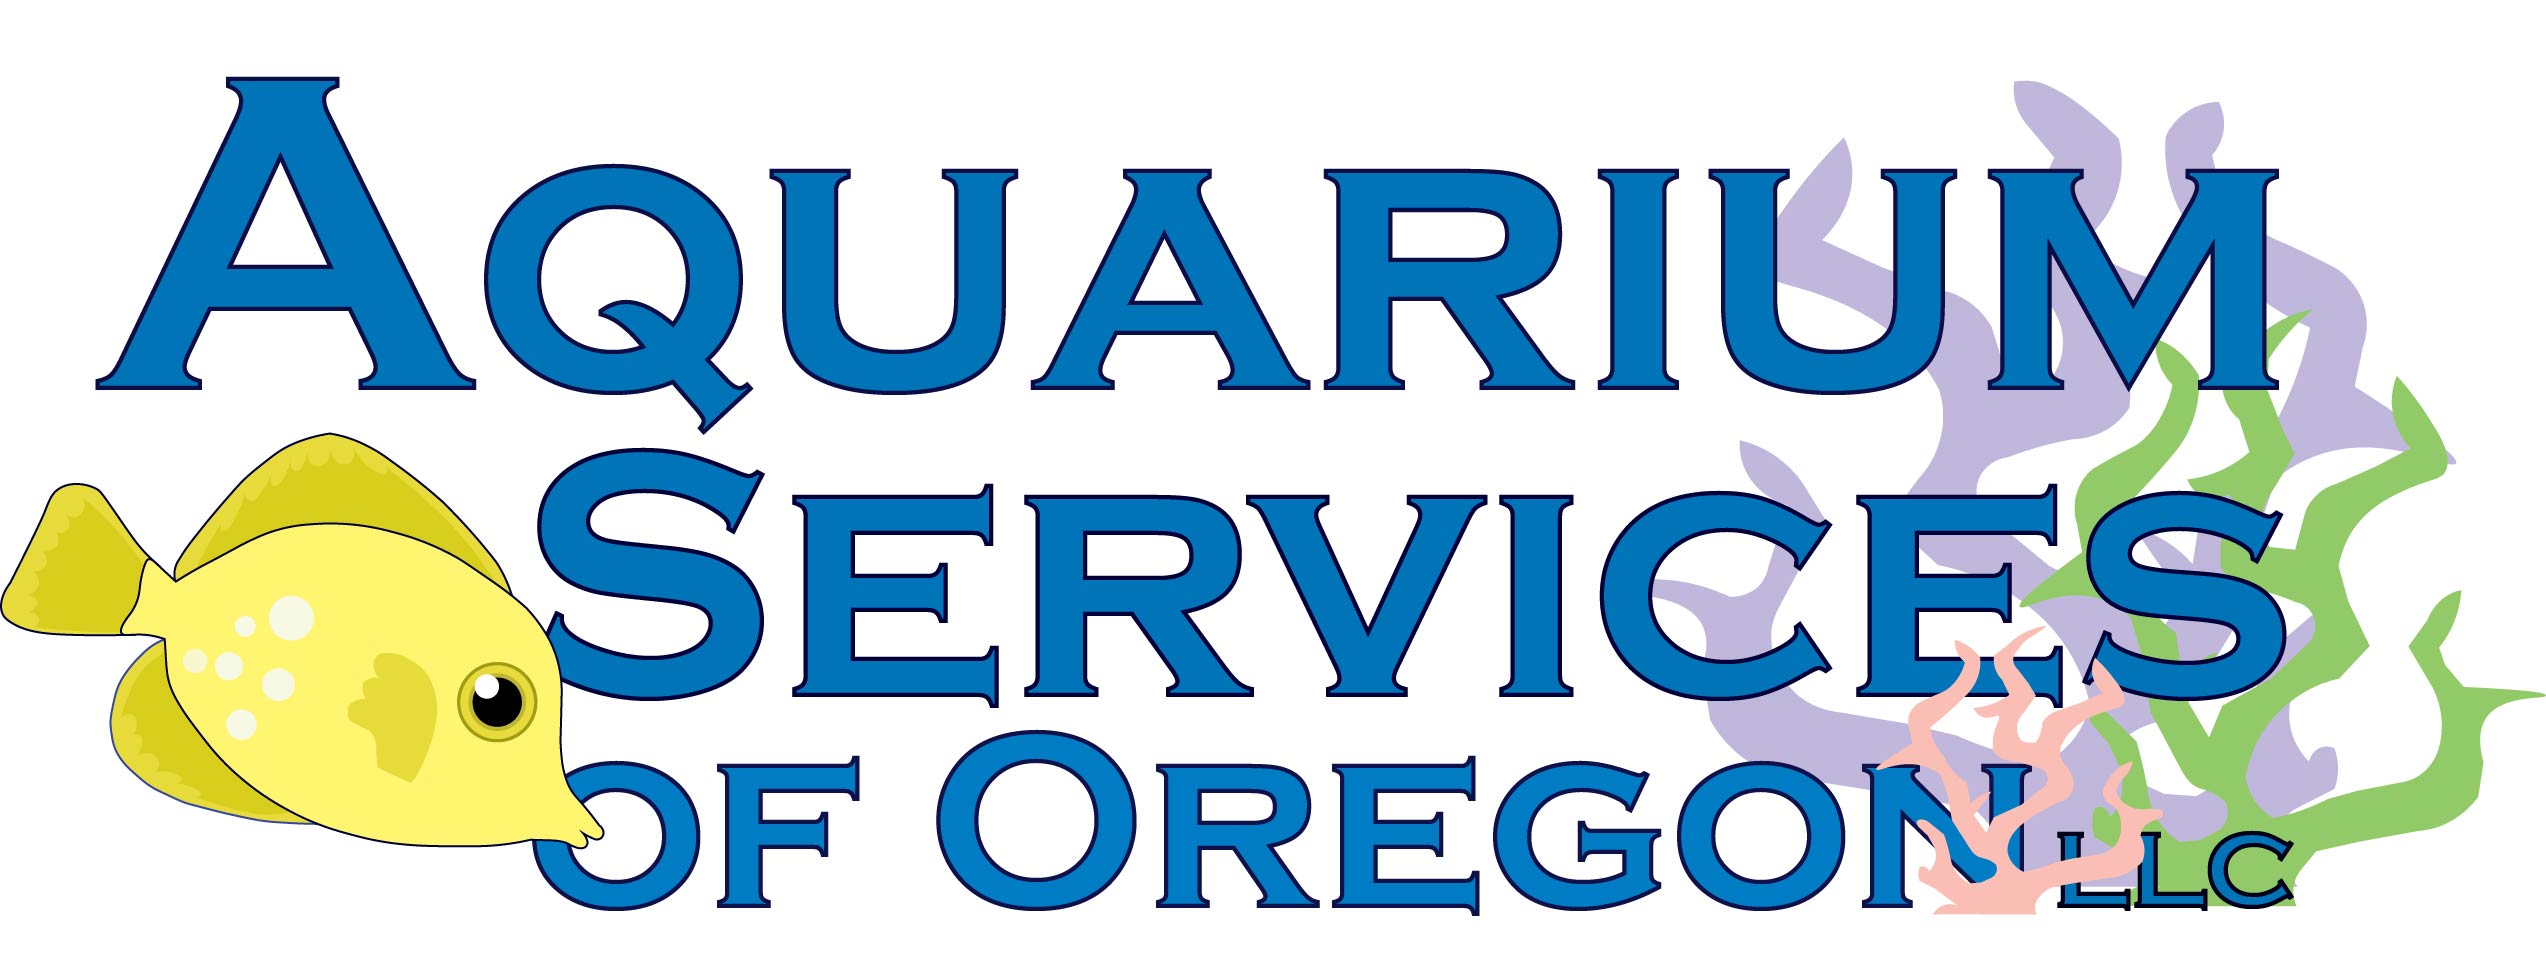 Aquarium Services of Oregon LLC - Aquarium Services Oregon Llc. Logo